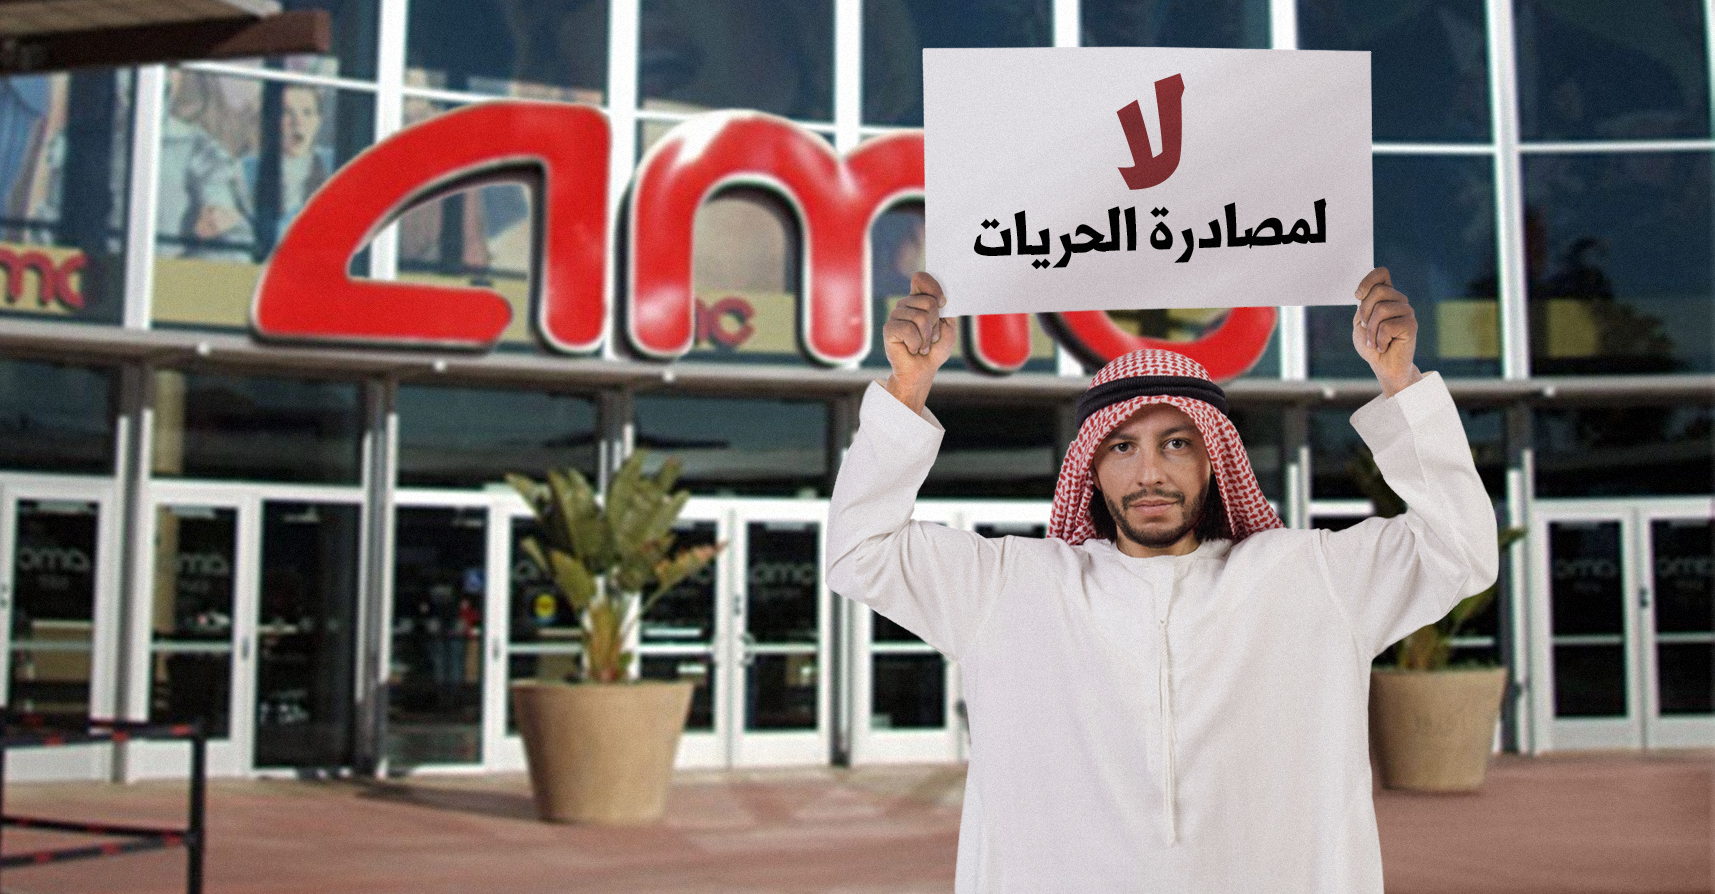 صورة سعودي لا يزال يتحدث عن الحقوق والحريّات رغم وجود السينما